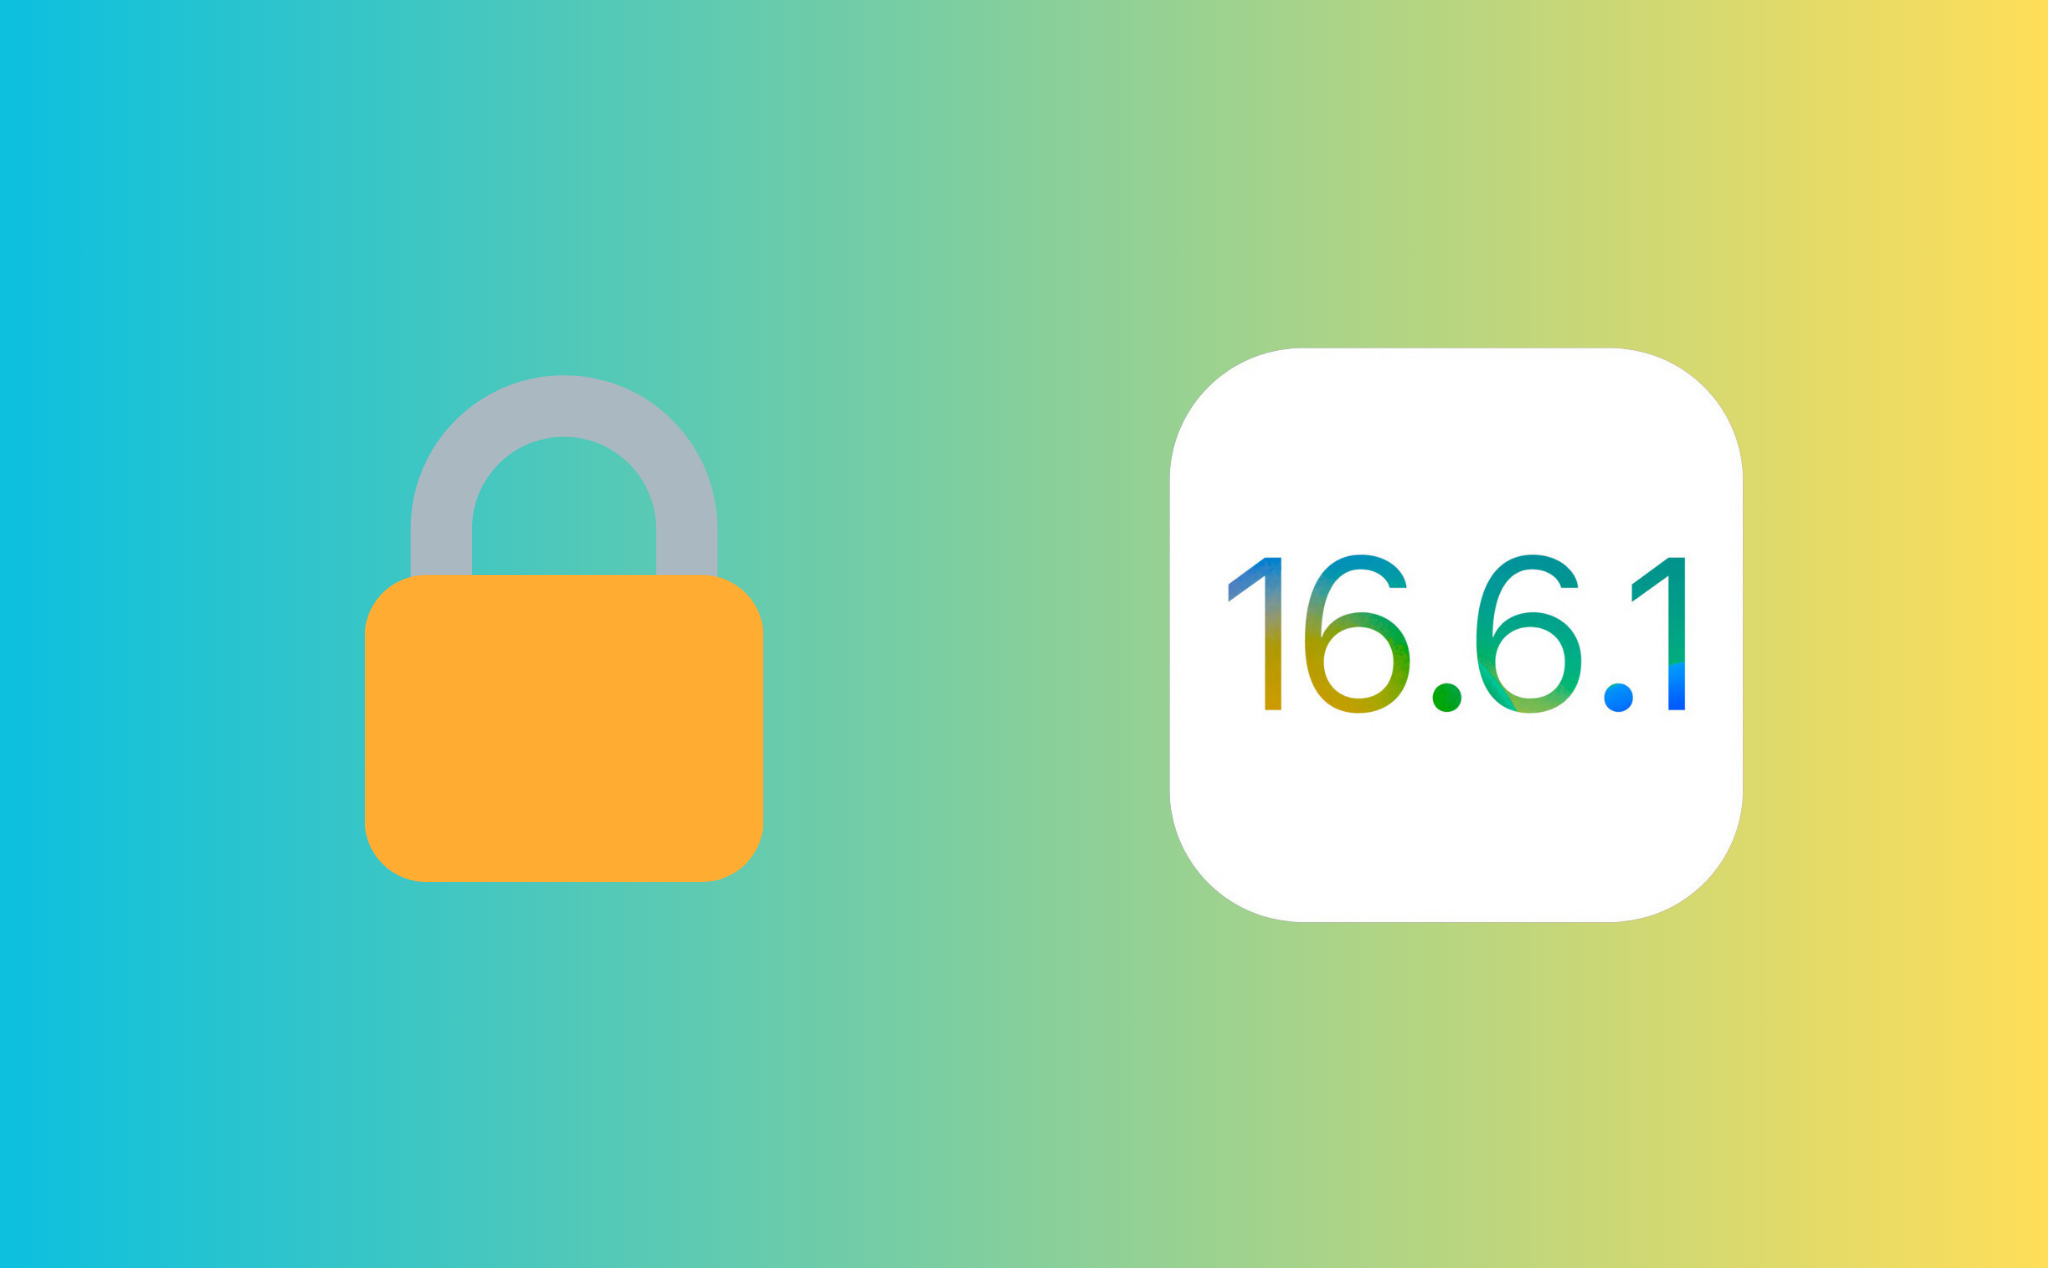 Apple khoá sign iOS 16.6.1, anh em nên cân nhắc khi nâng cấp iOS 17